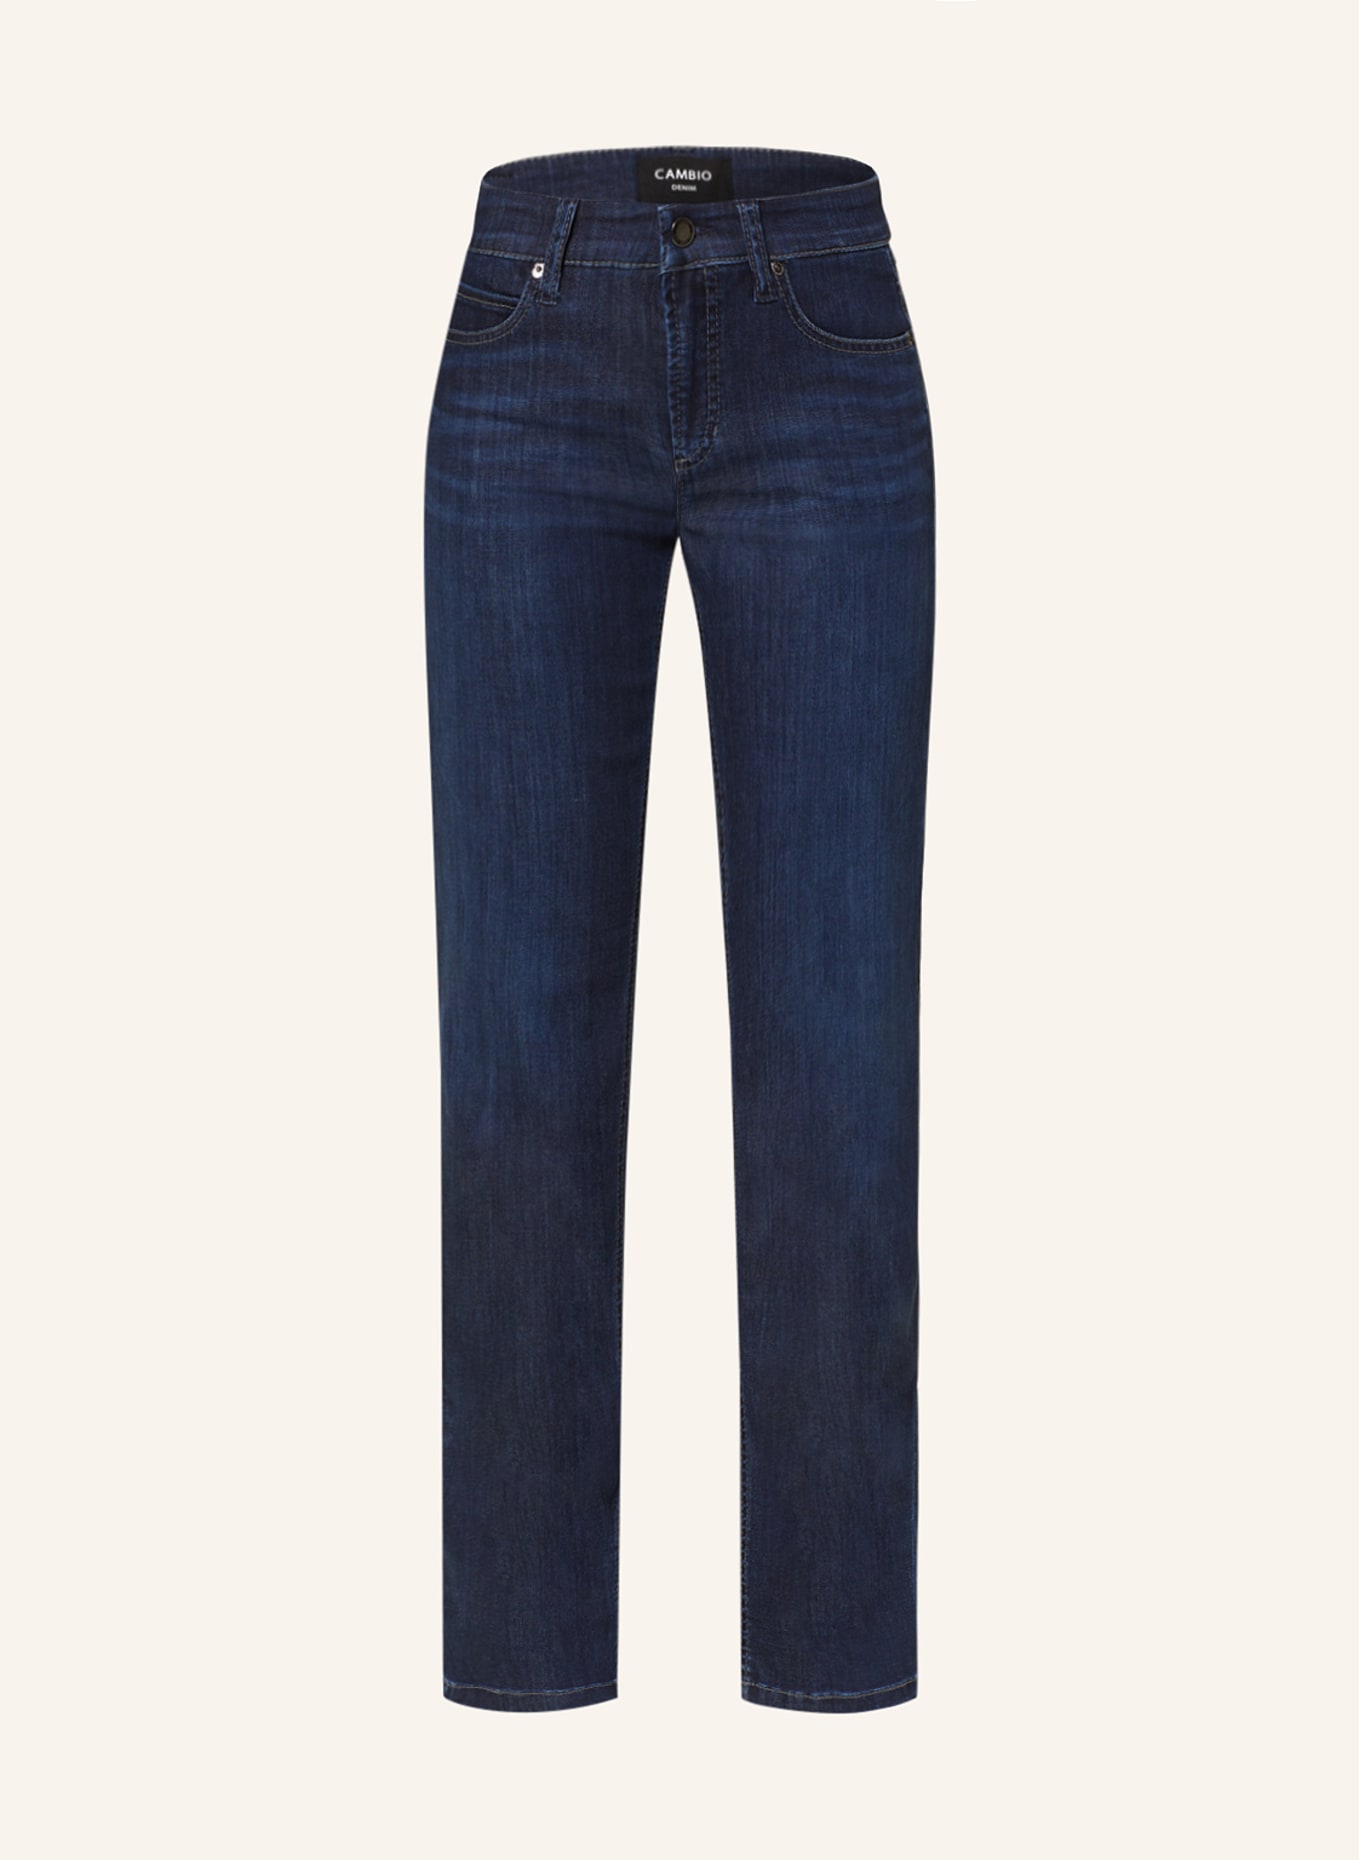 CAMBIO Straight Jeans PARIS, Farbe: 5158 westcoast dark used (Bild 1)